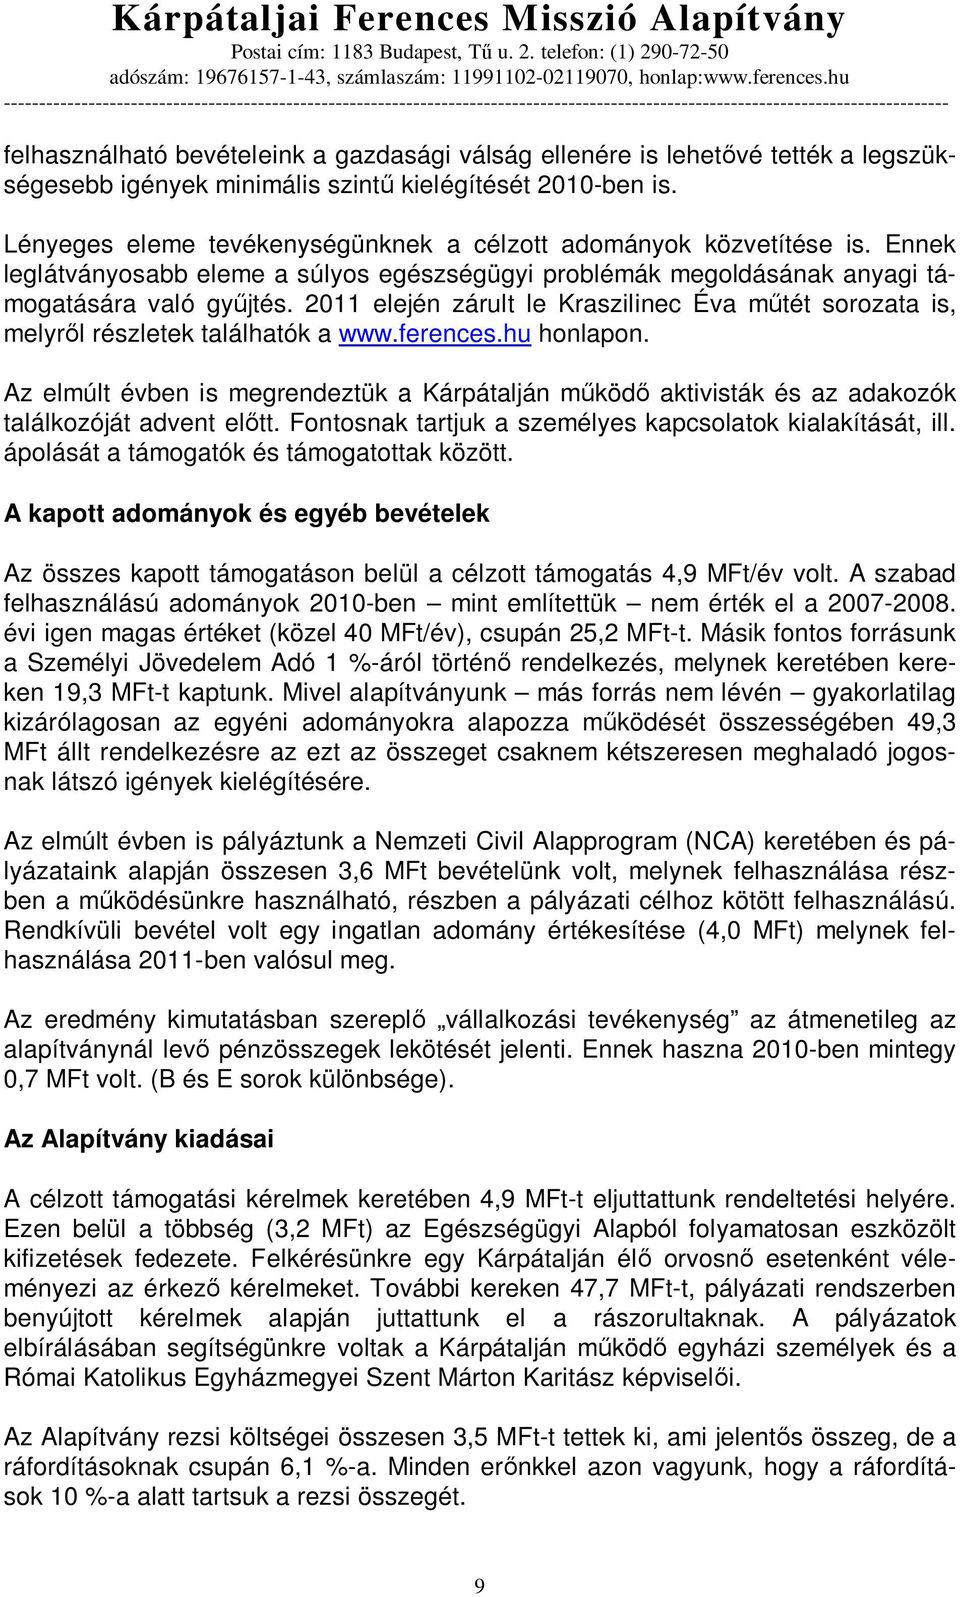 2011 elején zárult le Kraszilinec Éva m tét sorozata is, melyr l részletek találhatók a www.ferences.hu honlapon.